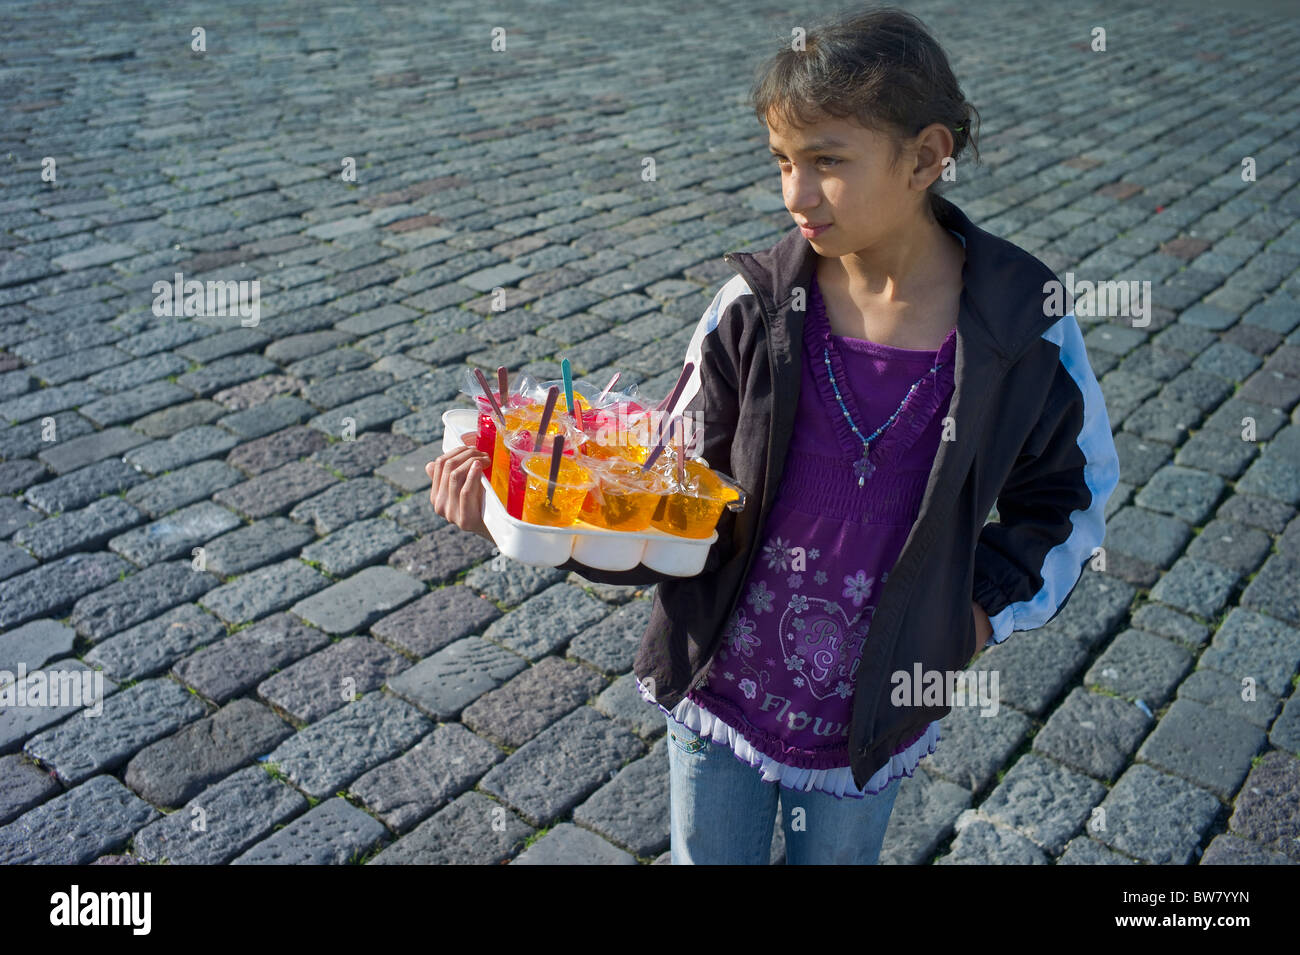 Young girl vending jello on street, Quito, Ecuador Stock Photo